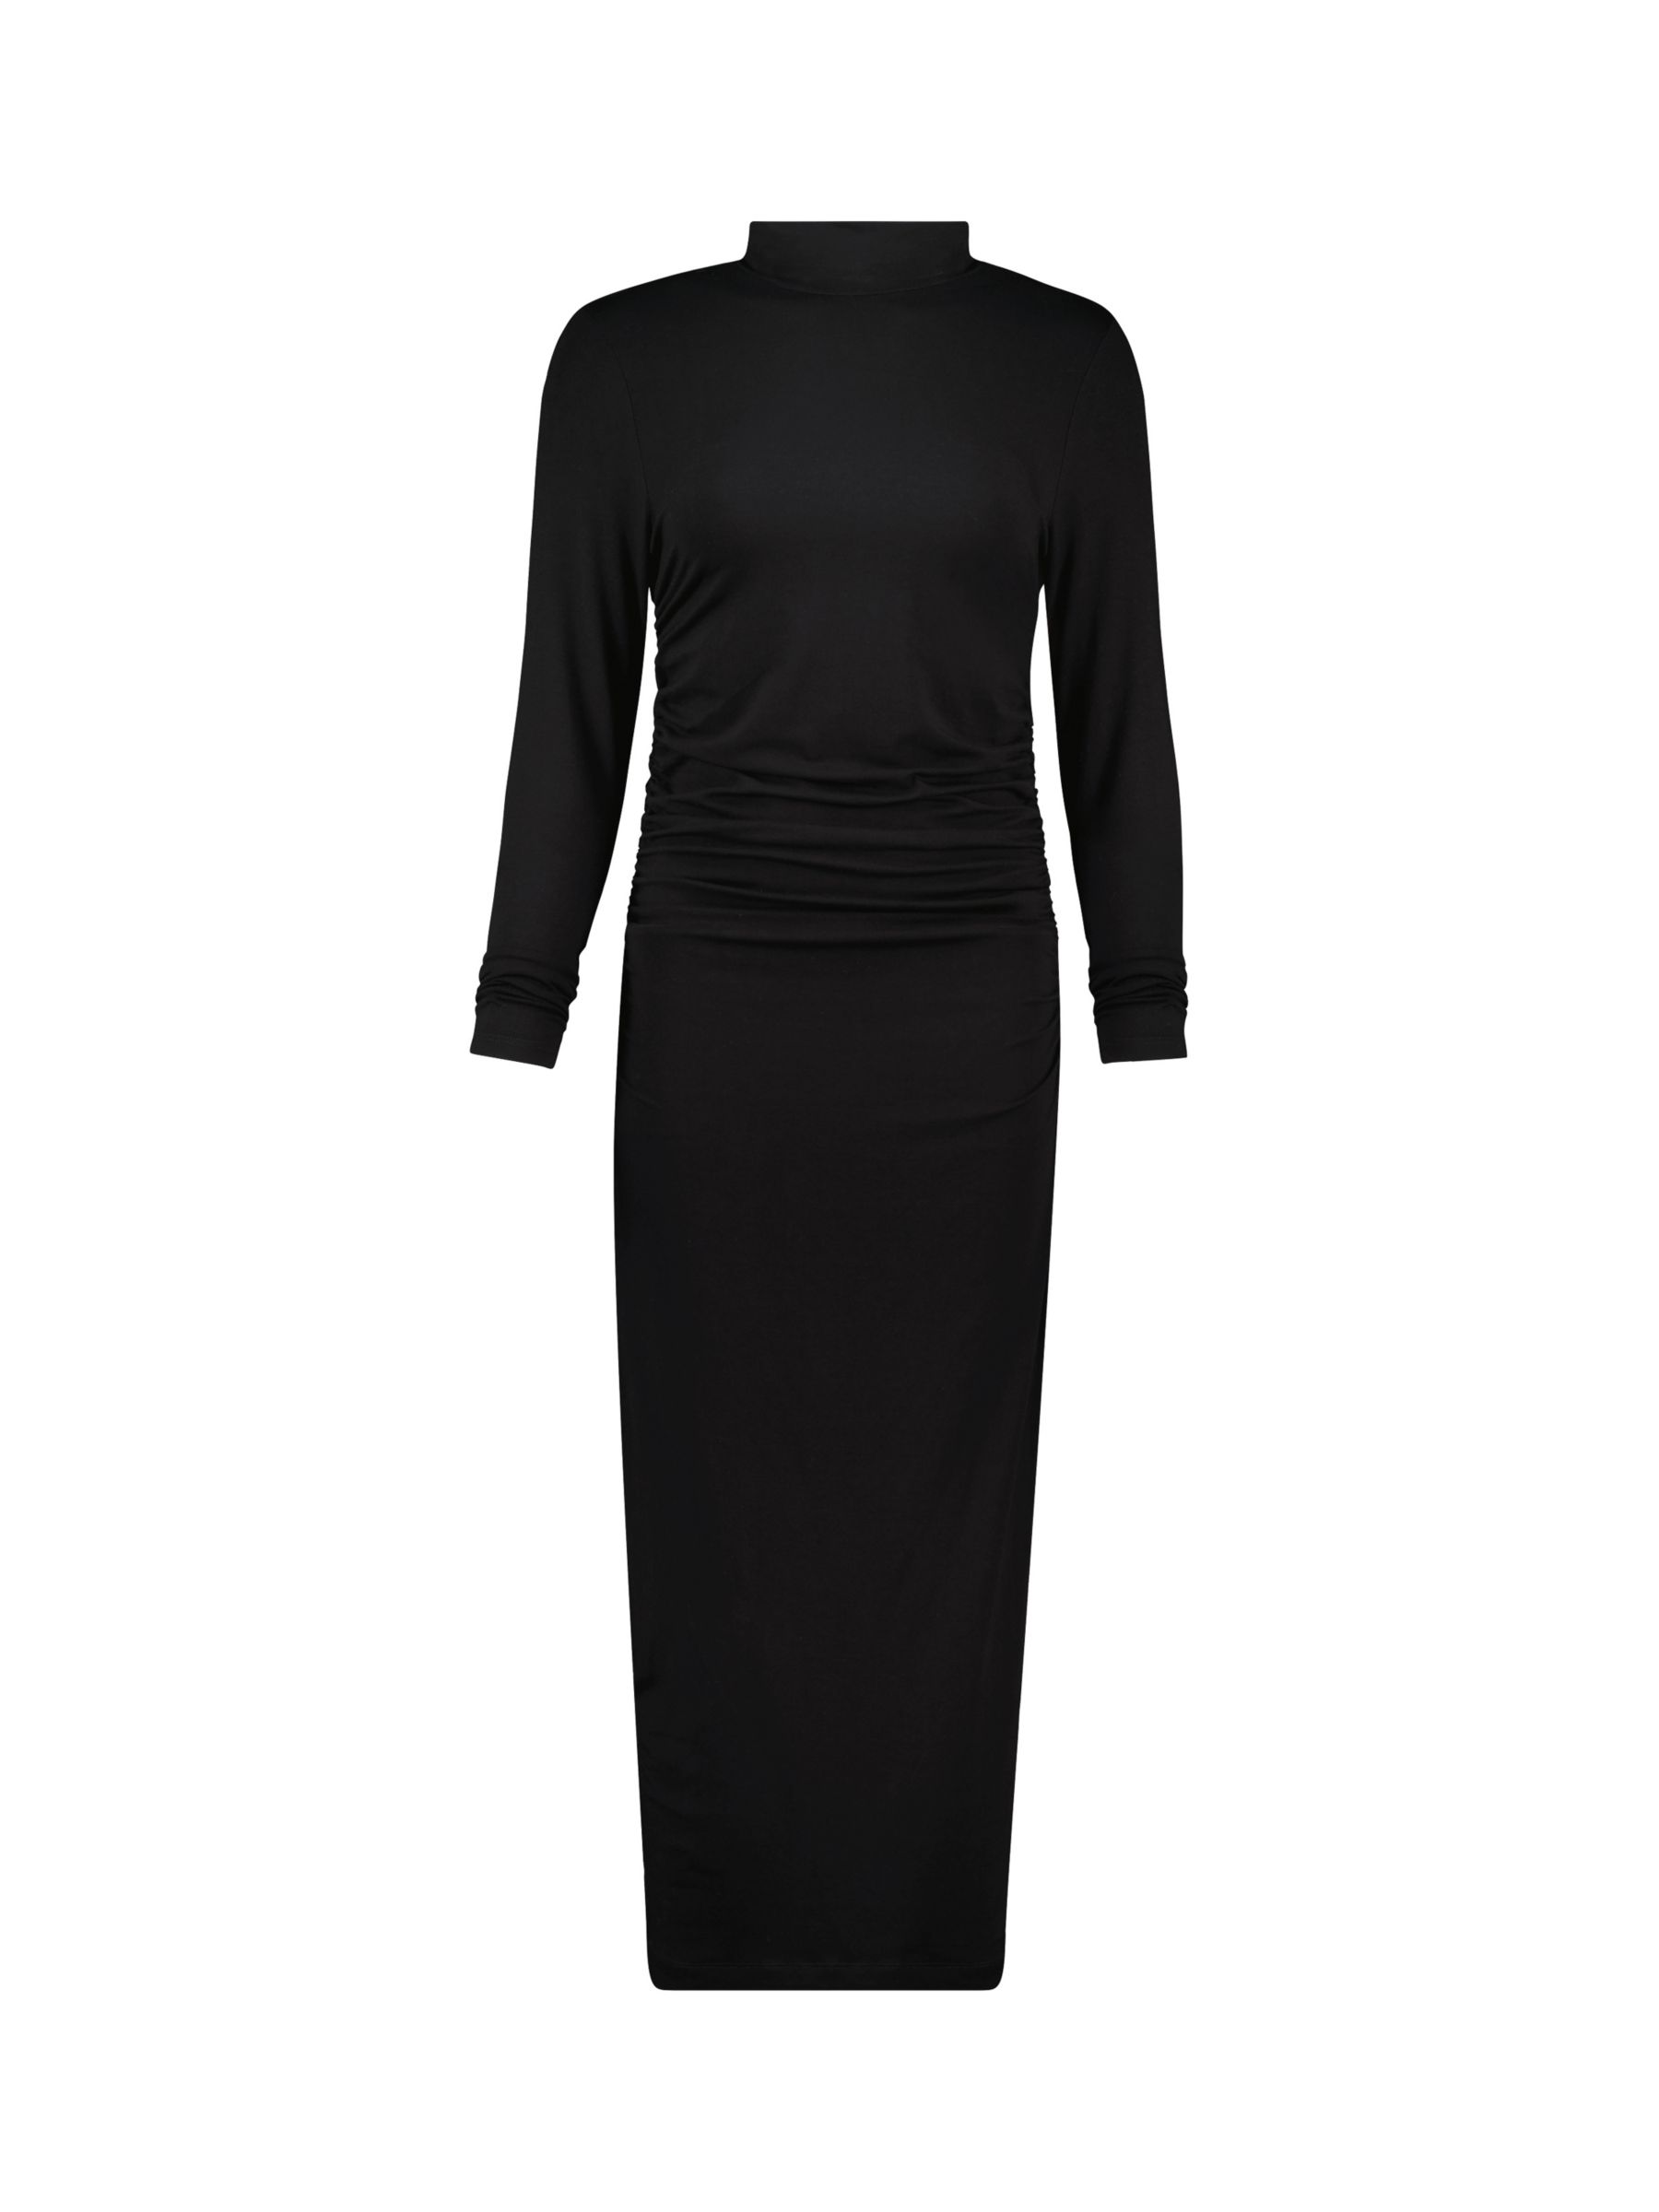 Baukjen Noelle Jersey Bodycon Dress, Caviar Black at John Lewis & Partners